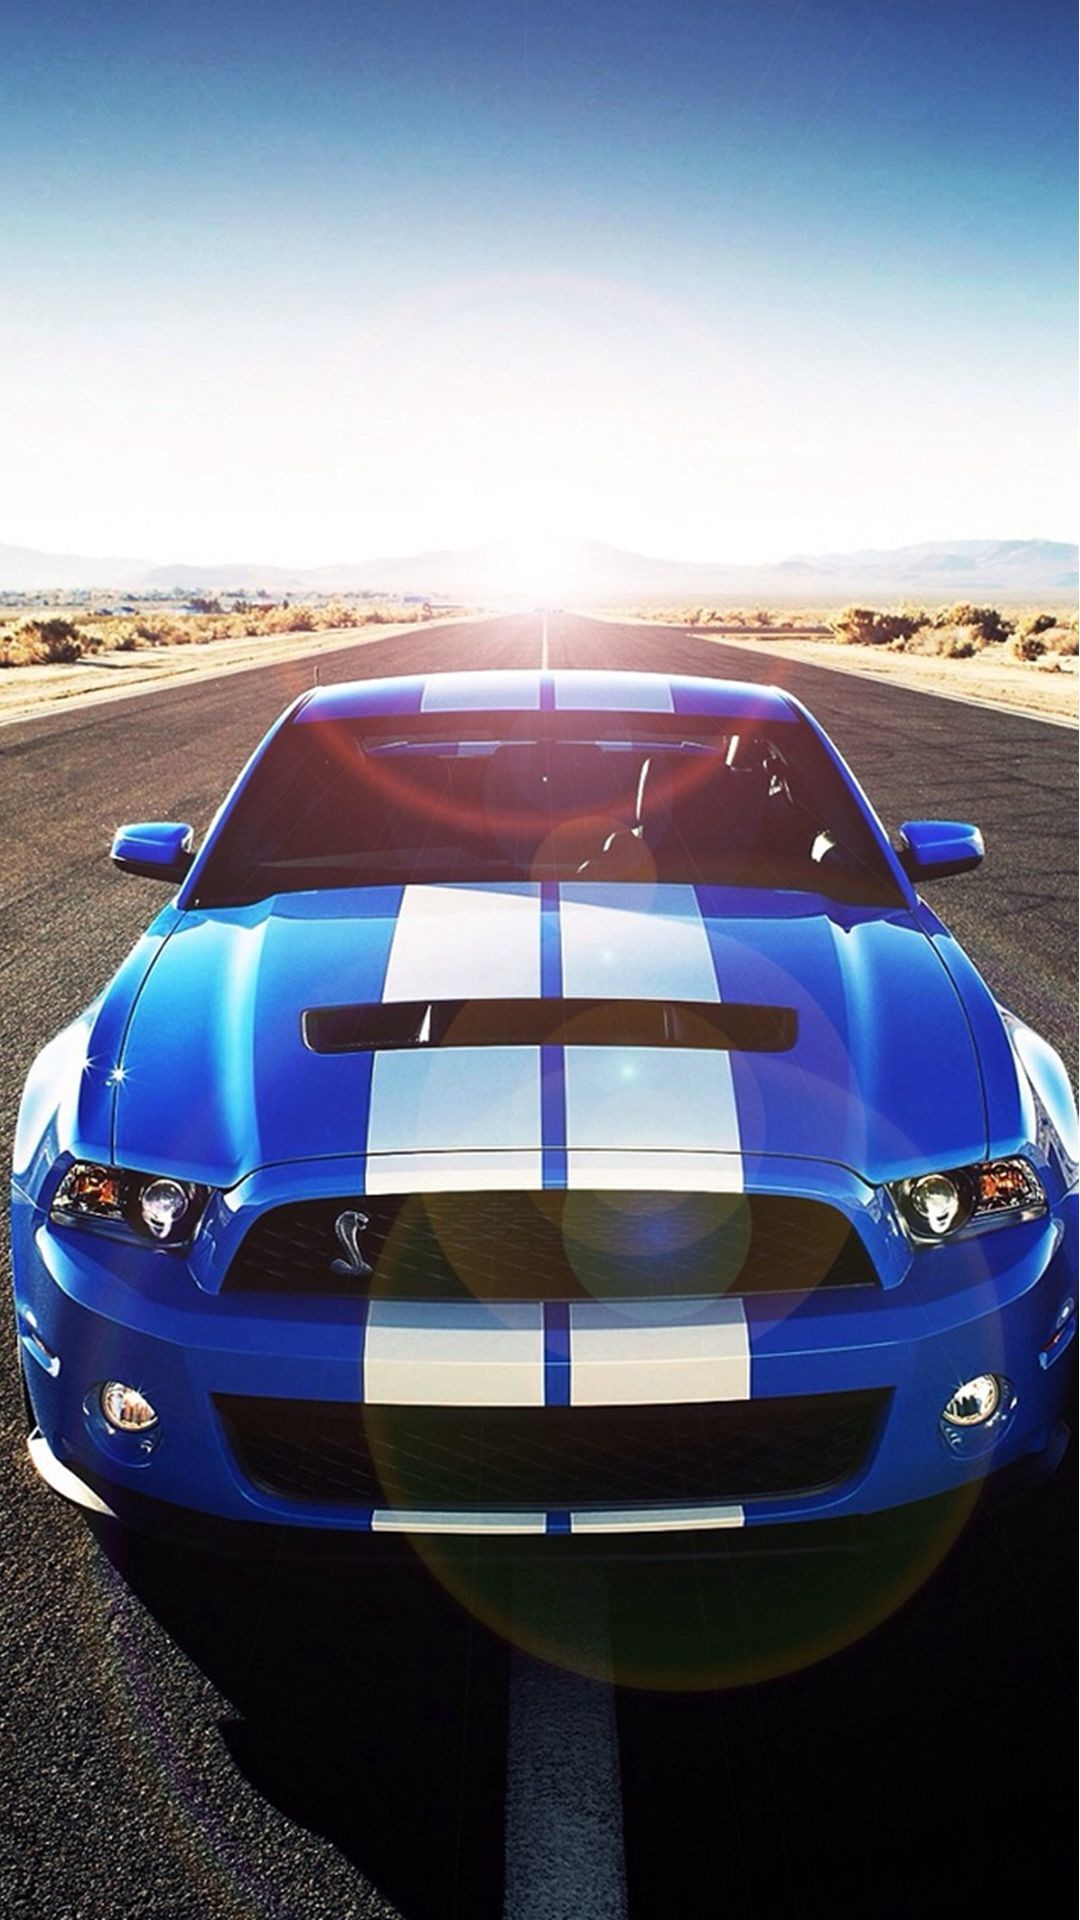 72+] Mustang Logo Wallpaper - WallpaperSafari